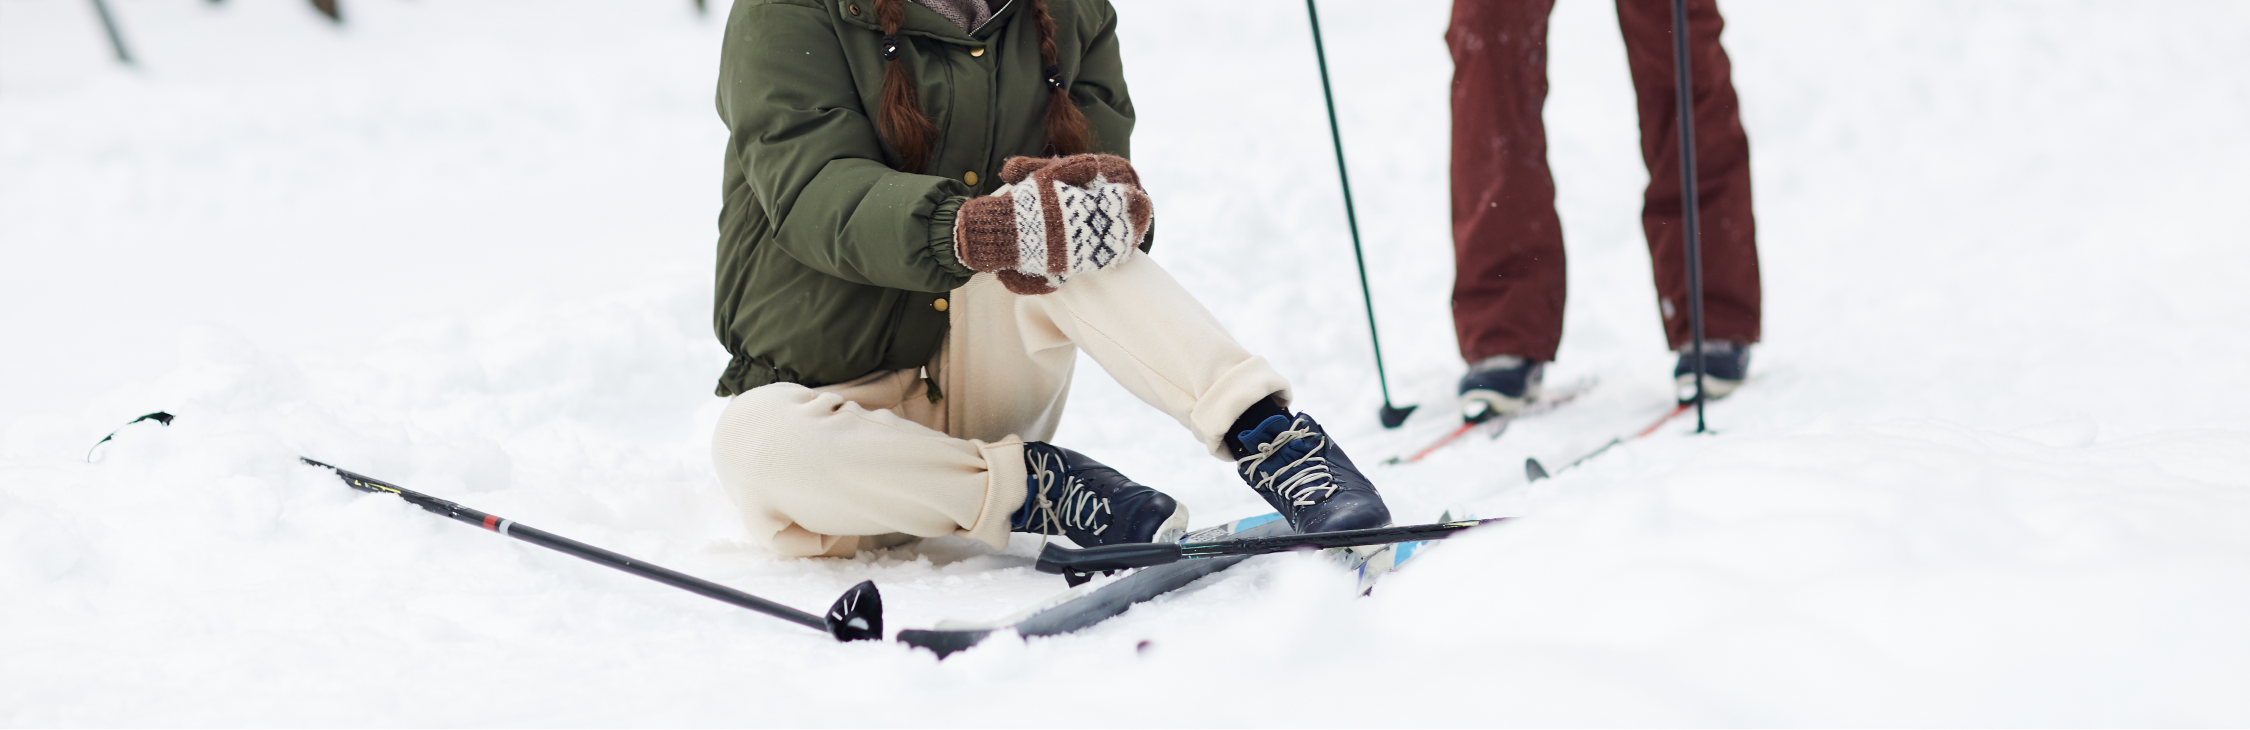 Skiing Knee Injuries